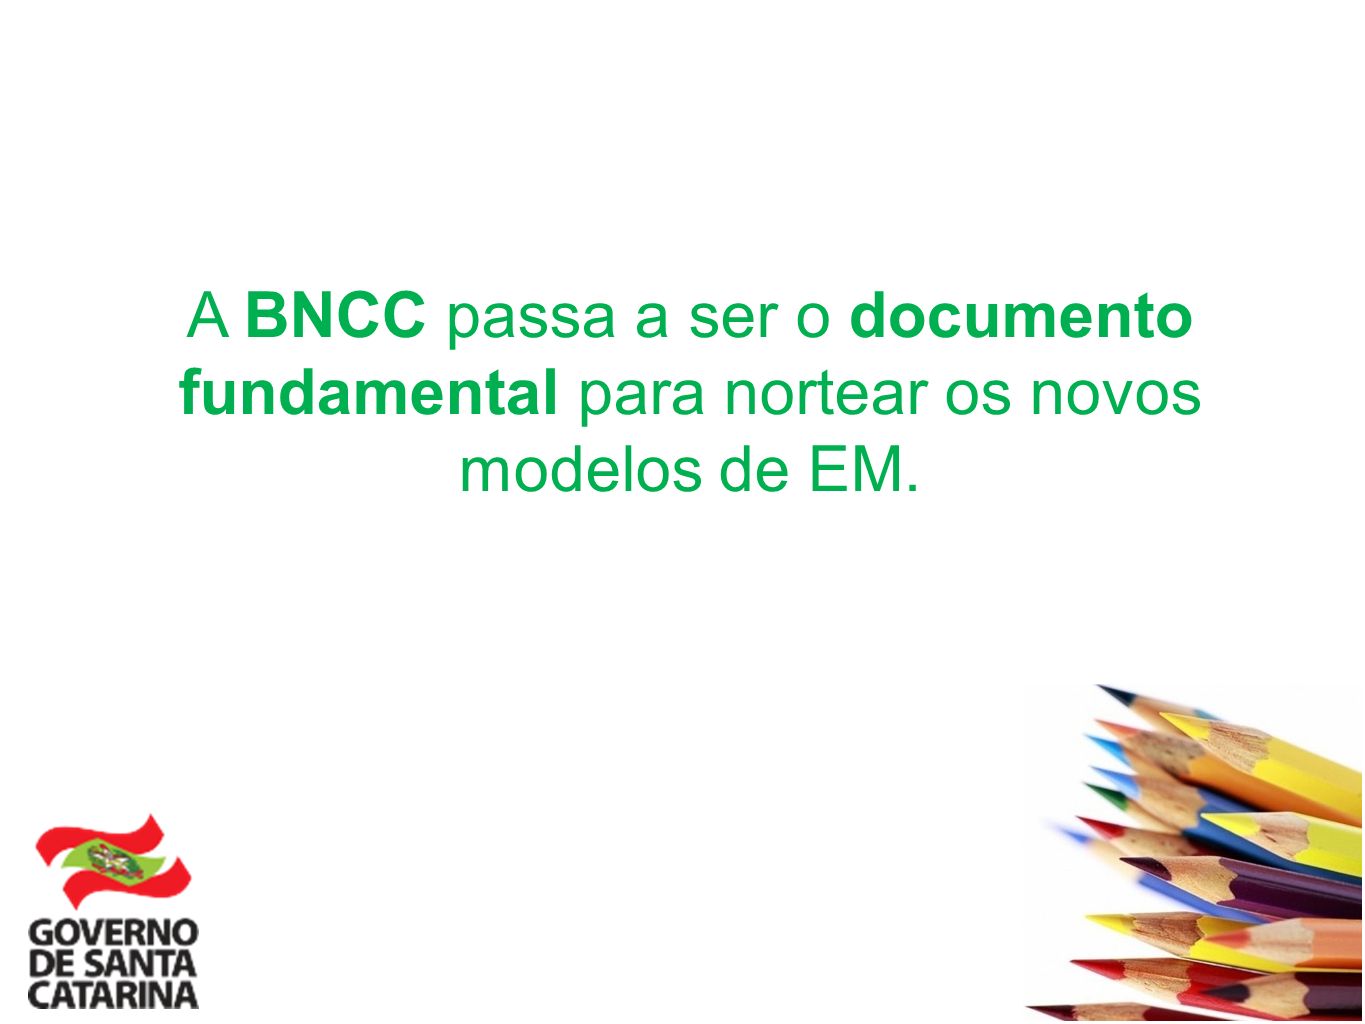 A BNCC passa a ser o documento fundamental para nortear os novos modelos de EM.